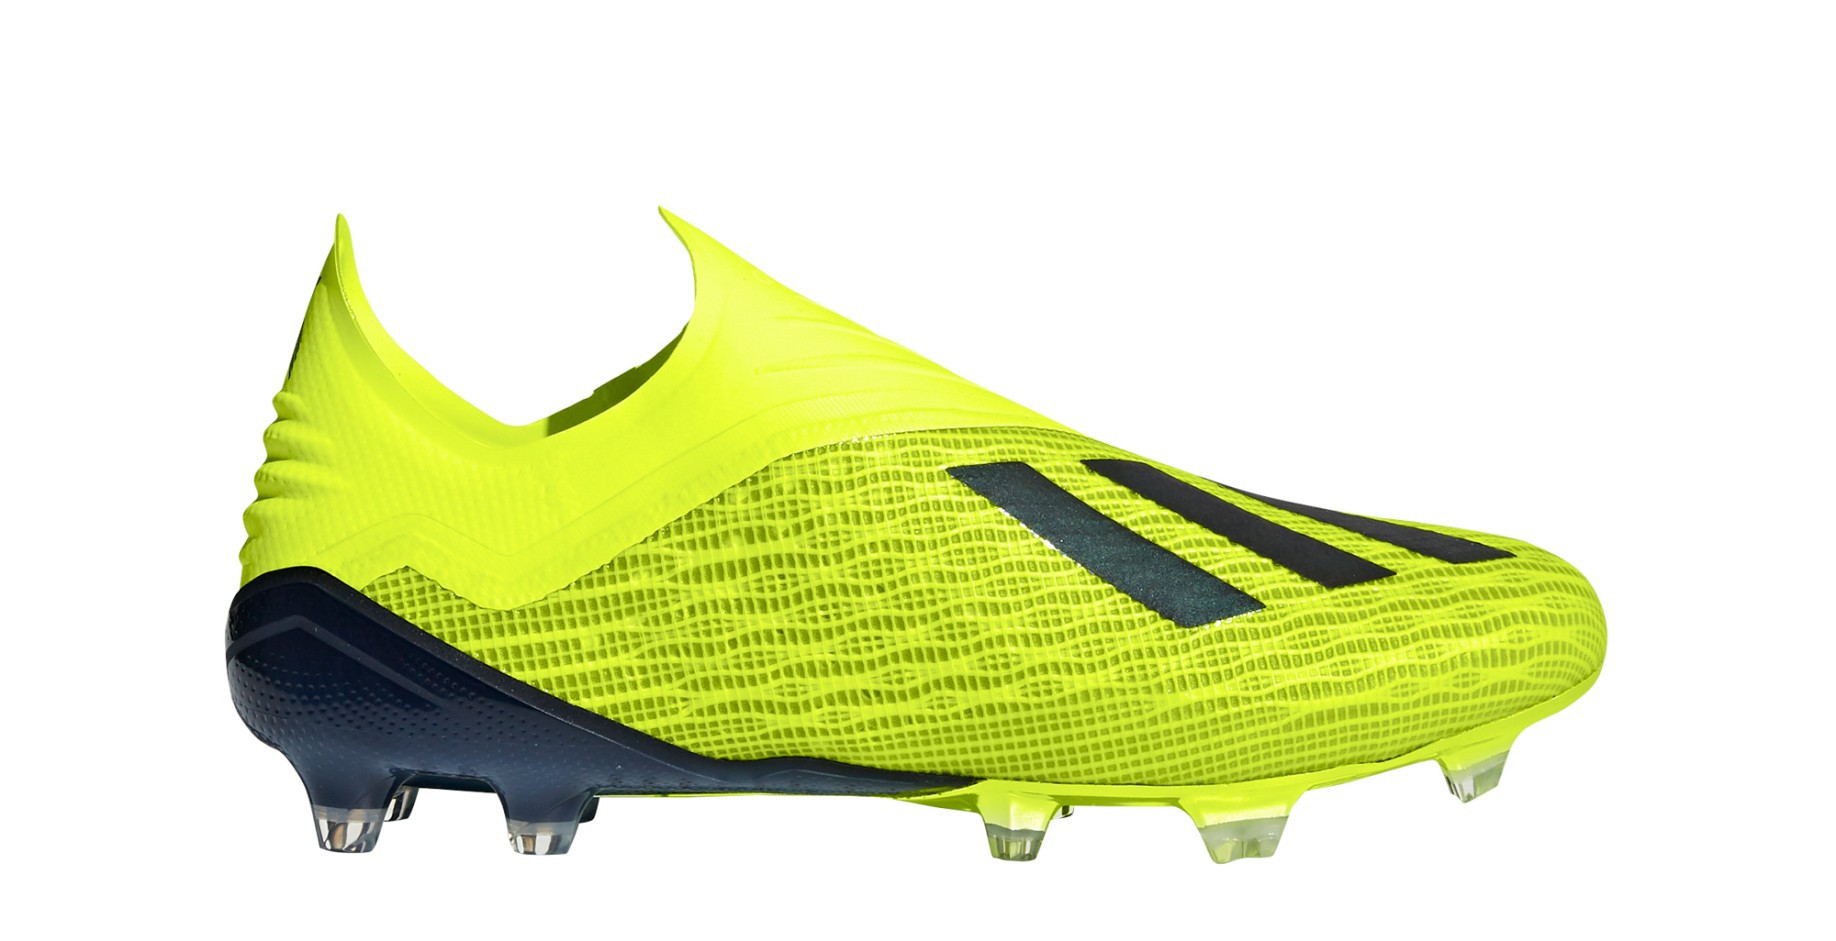 Botas de fútbol Adidas X FG Equipo de Modo de Pack colore amarillo - Adidas - SportIT.com